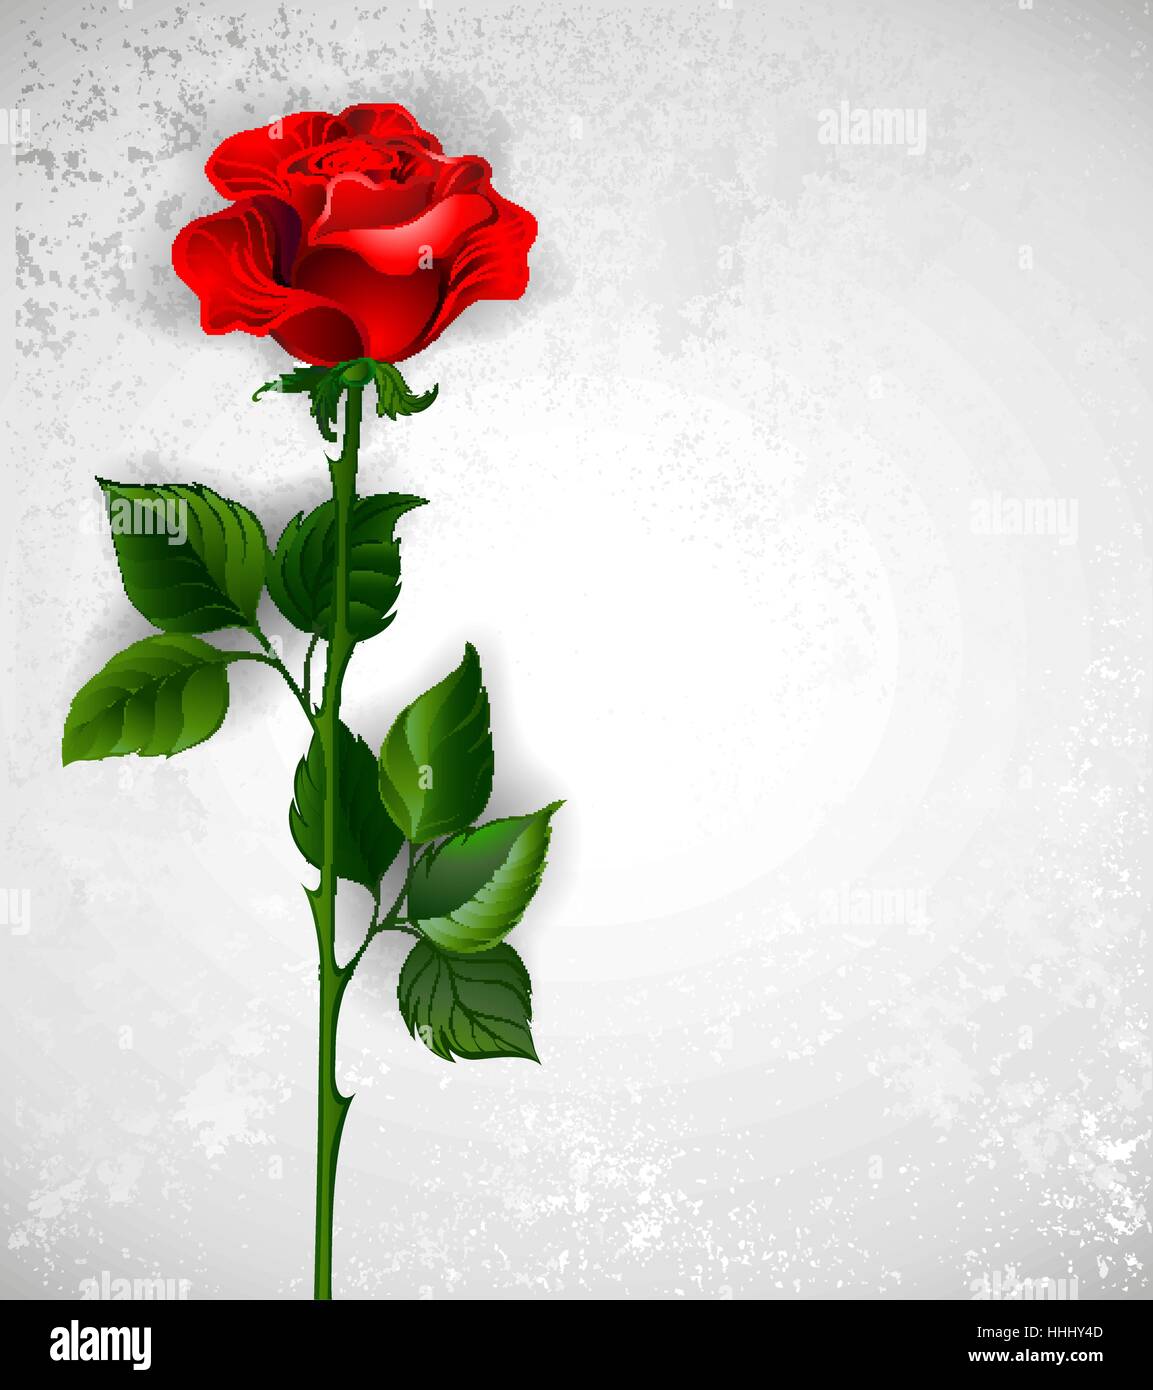 rote rose mit einem geraden Stamm und grüne Blätter auf einem hellen Hintergrund. Stock Vektor